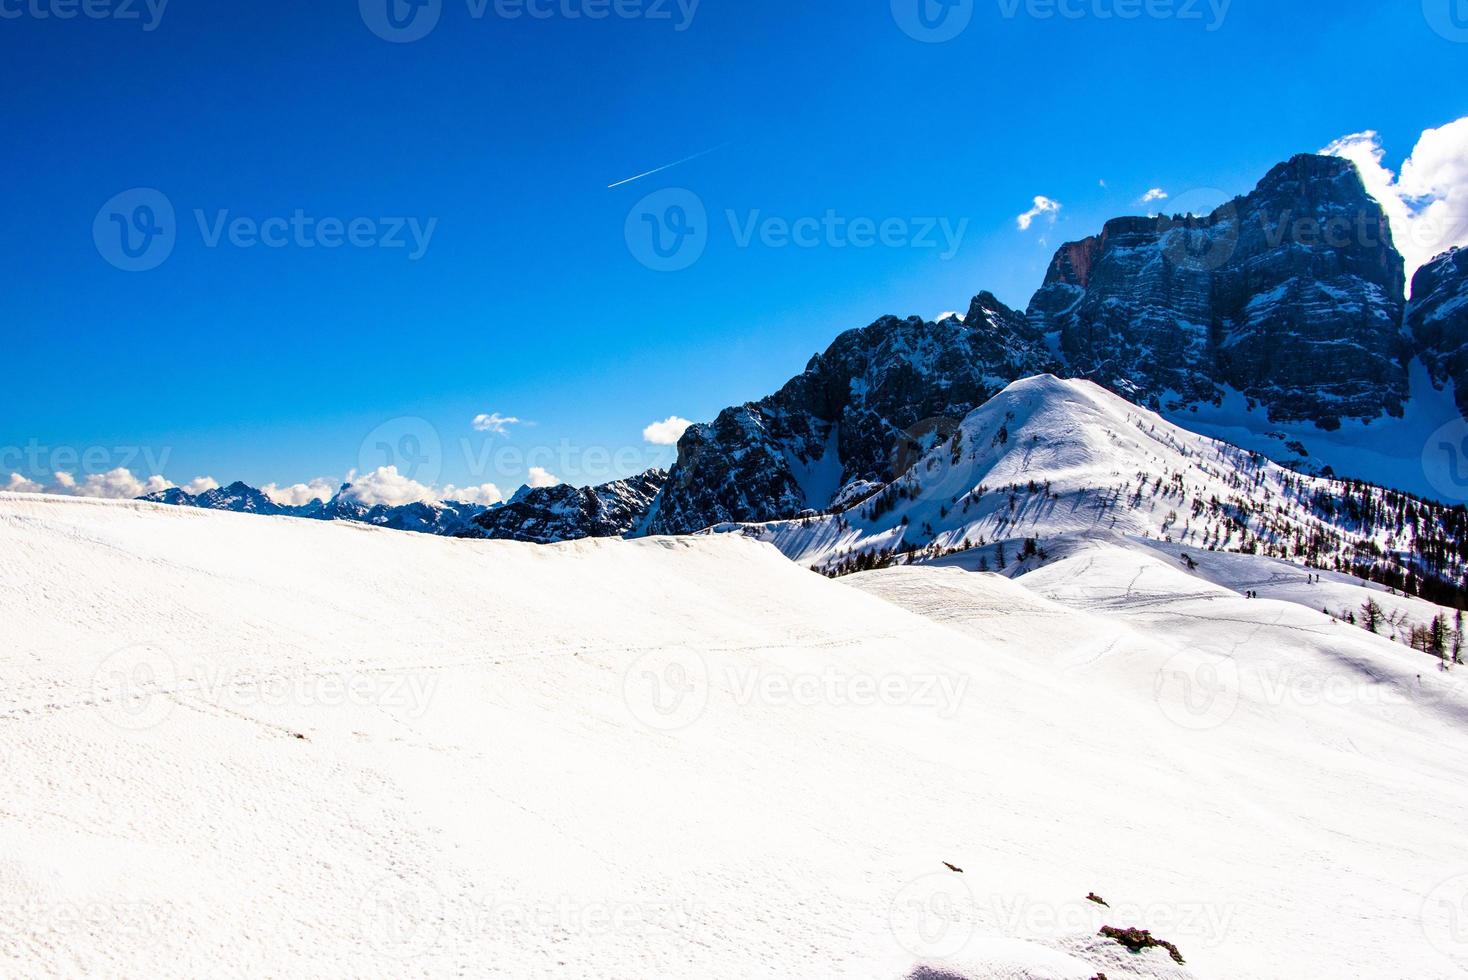 Gipfel der Dolomiten im Winter foto